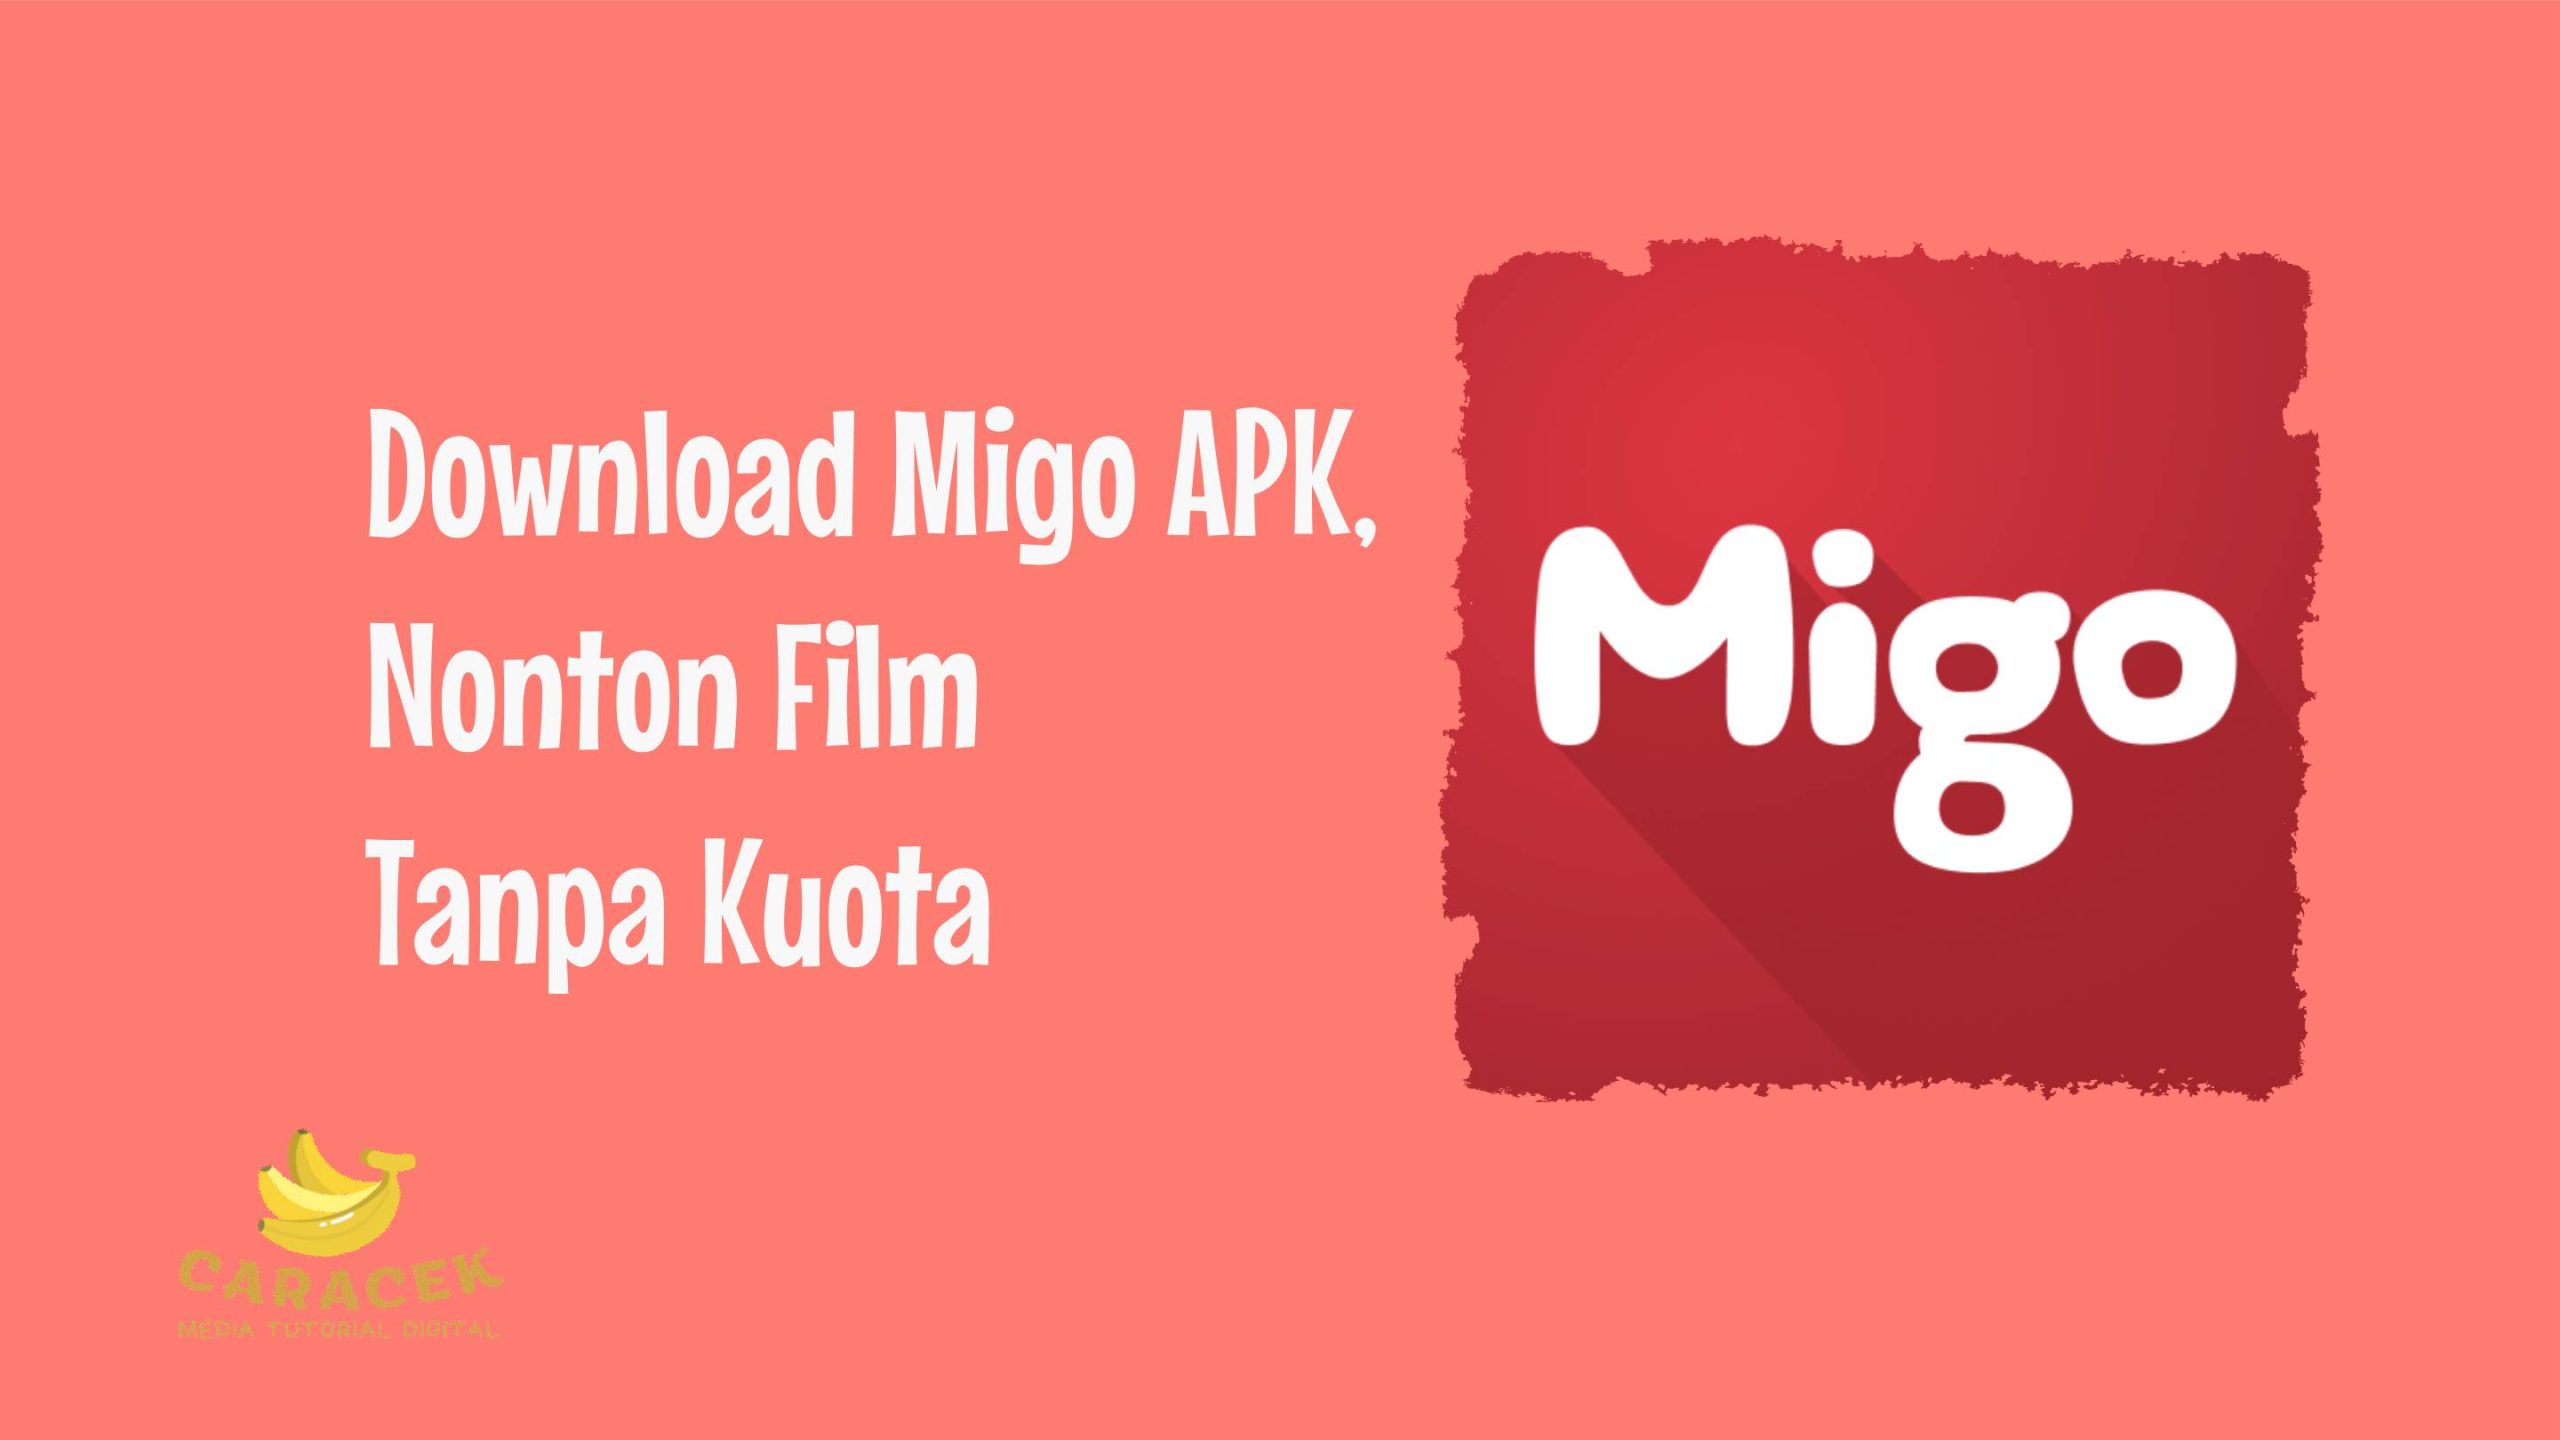 Download Migo APK